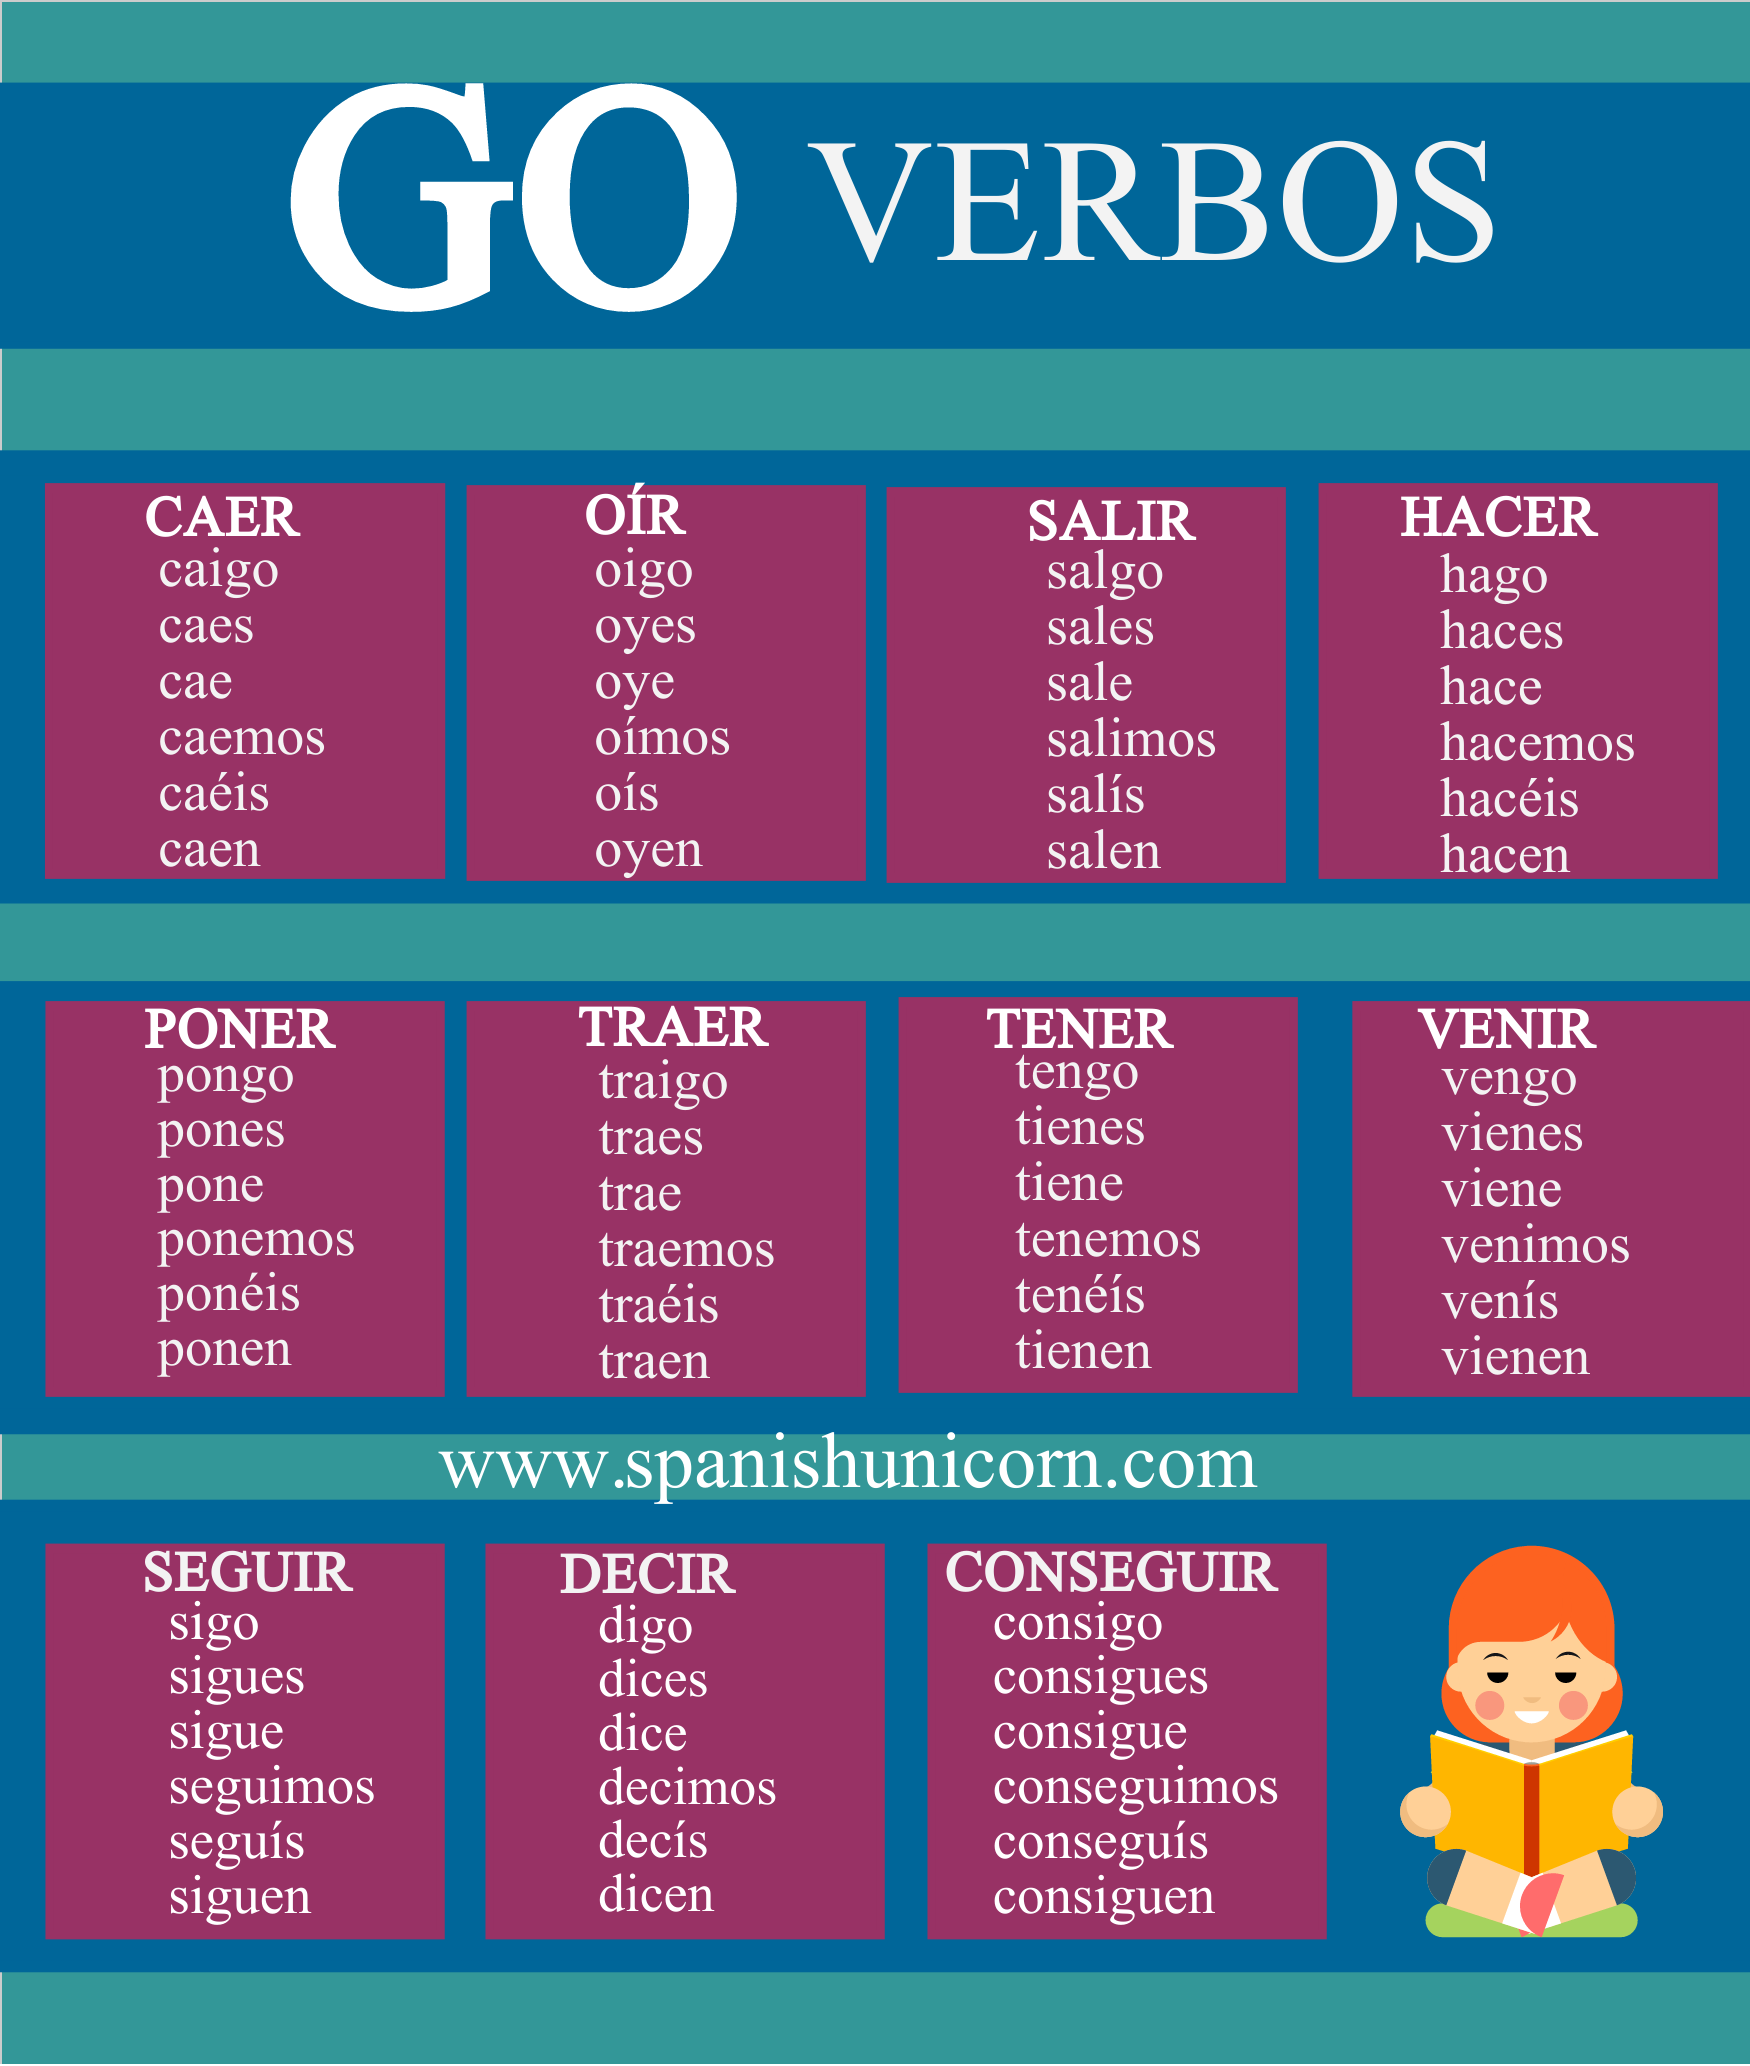 spanish-grammar-course-irregular-present-tense-verbs-steemkr